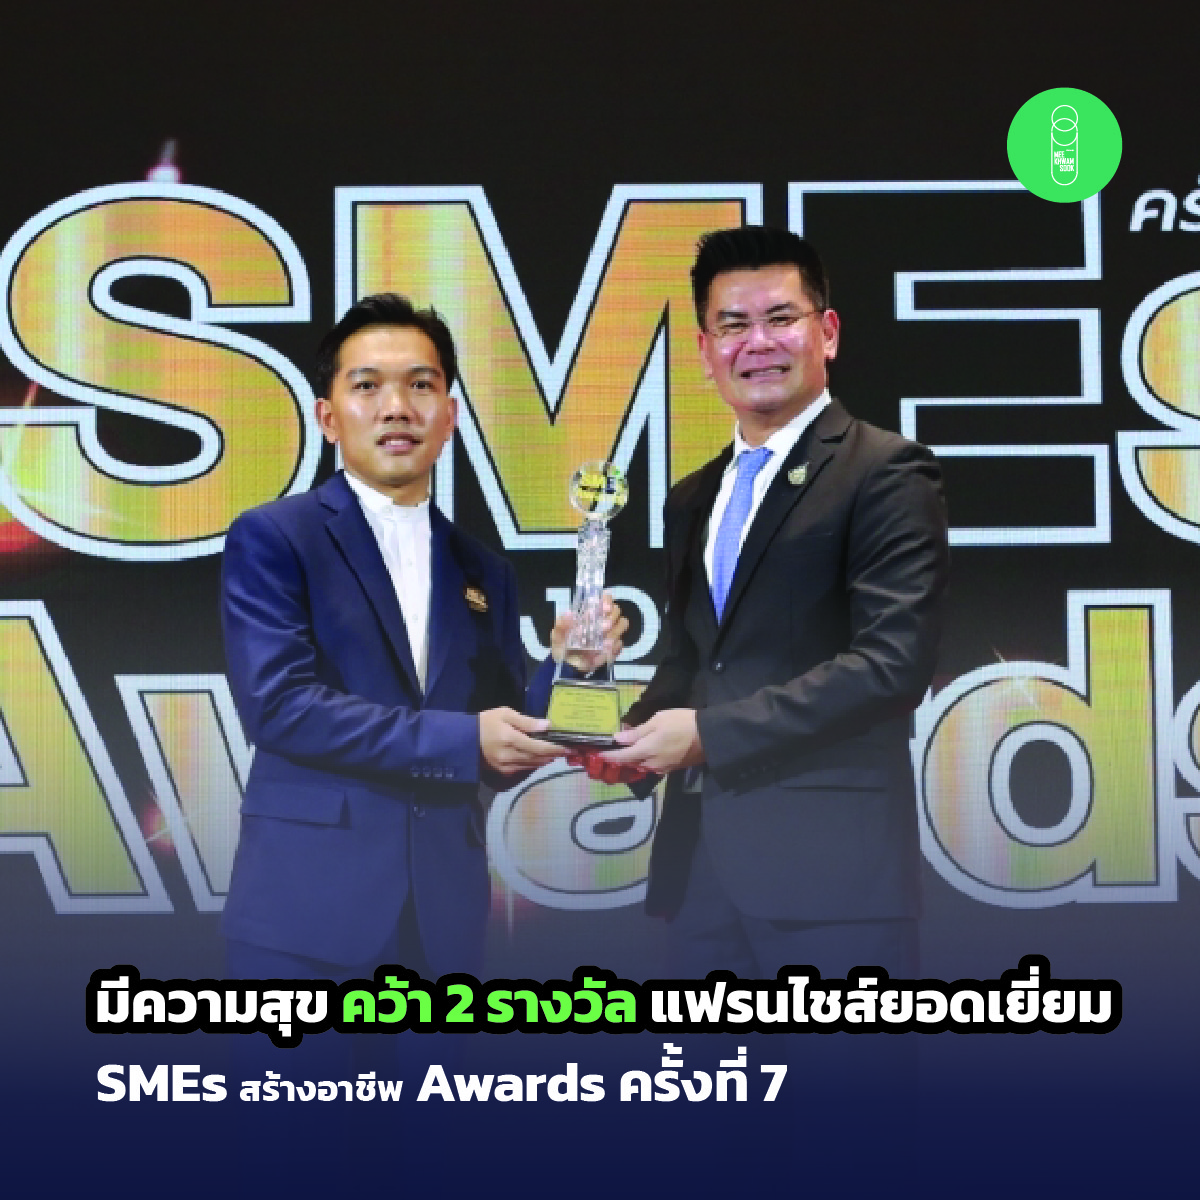 มีความสุข คว้า 2 รางวัลแฟรนไชส์ยอดเยี่ยม จาก SMEs สร้างอาชีพ Awards